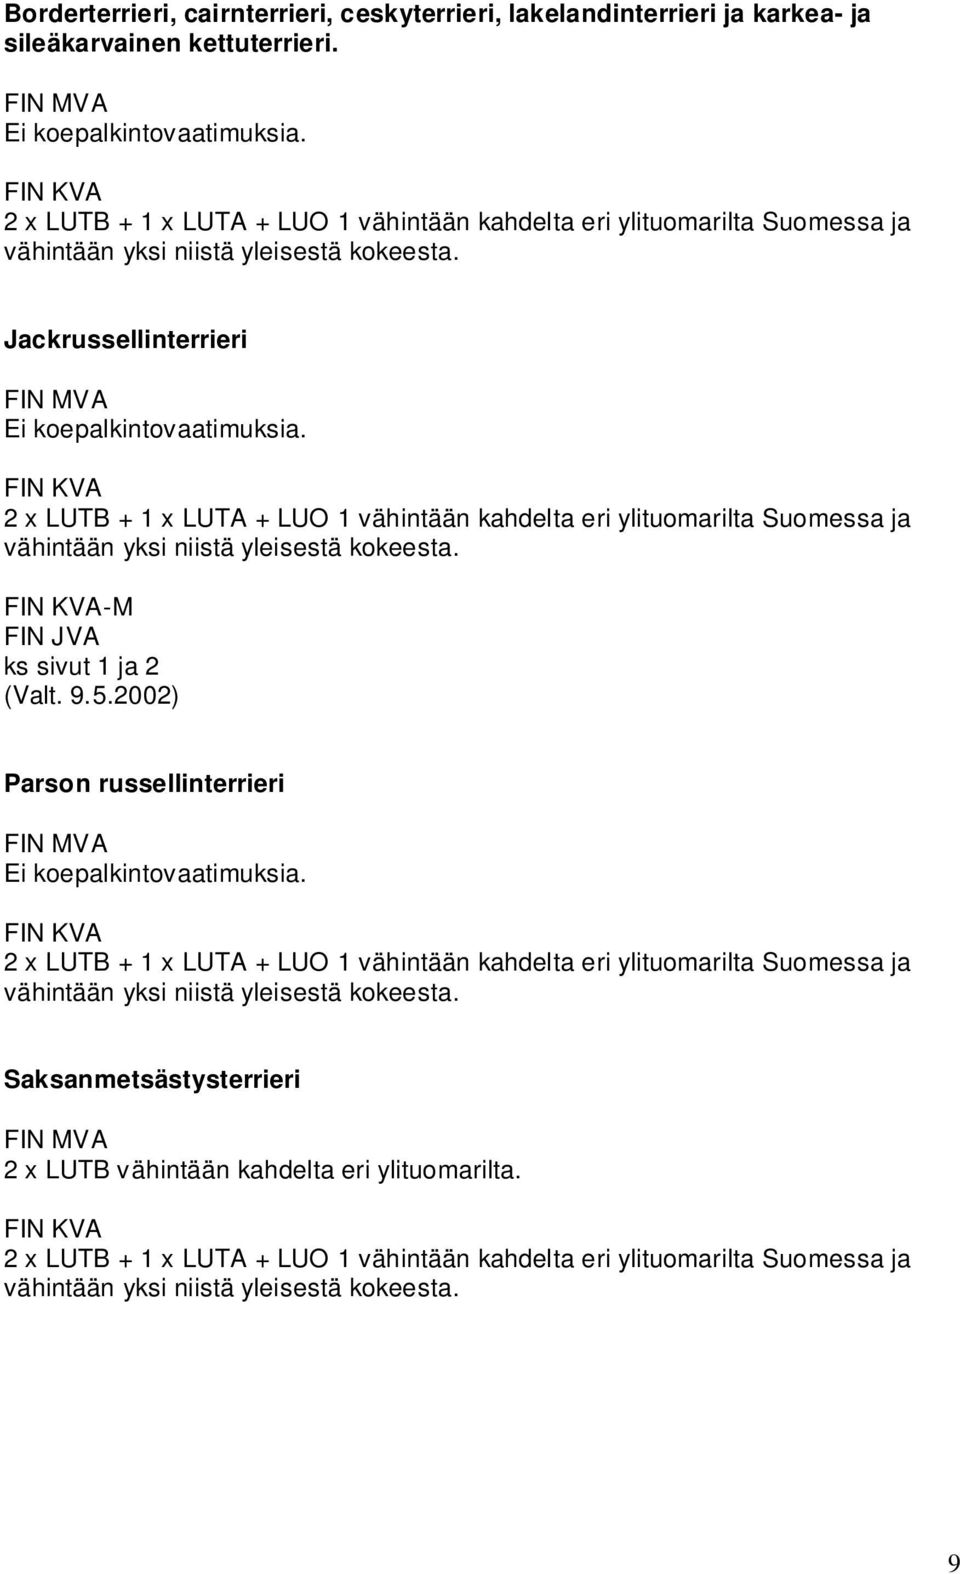 Jackrussellinterrieri  -M FIN JVA ks sivut 1 ja 2 (Valt. 9.5.2002) Parson russellinterrieri  Saksanmetsästysterrieri 2 x LUTB vähintään kahdelta eri ylituomarilta.  9